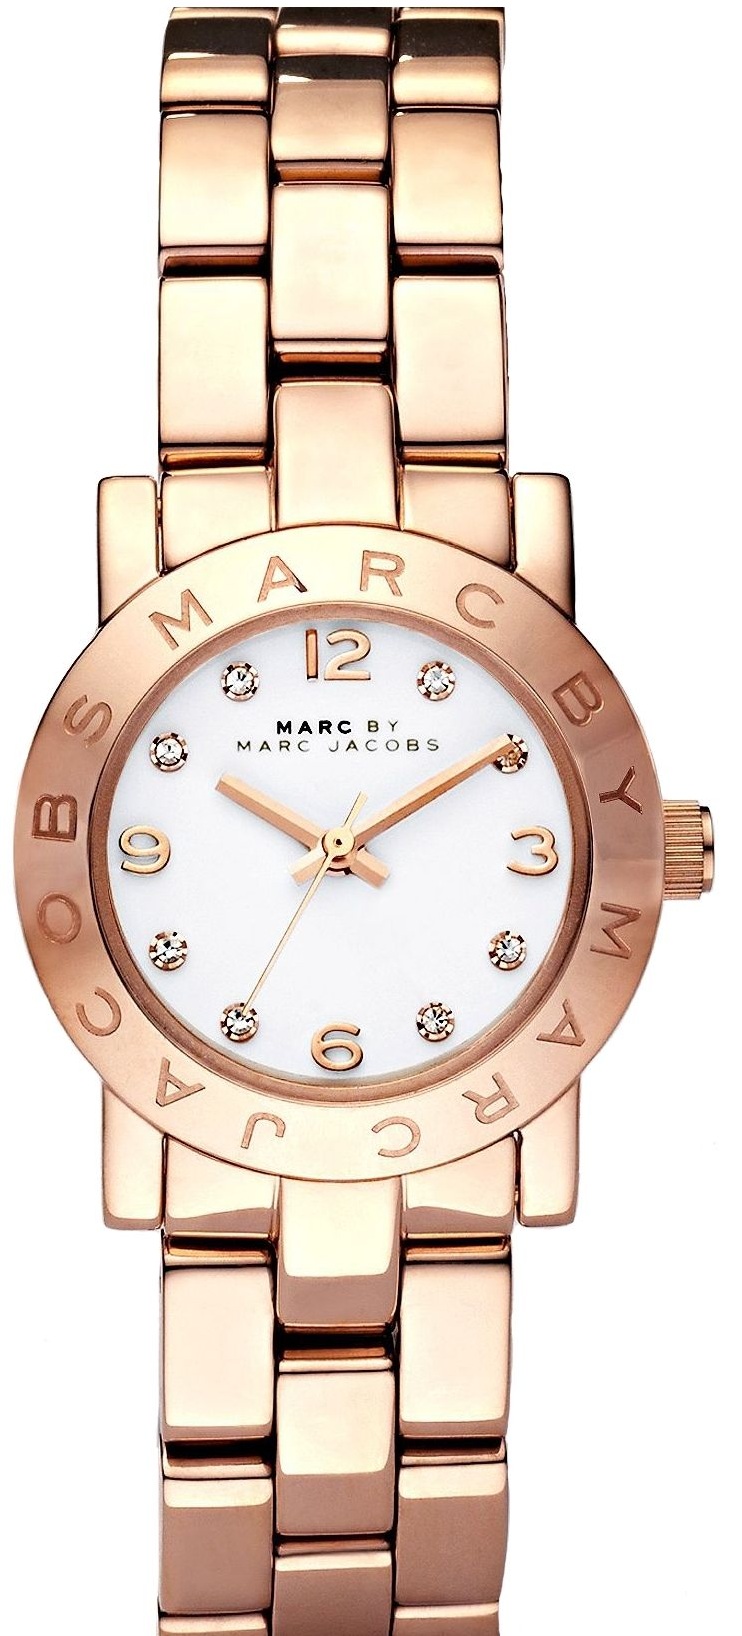 Đồng hồ Marc Jacobs chính hãng, cao cấp nhập khẩu, Giá tốt